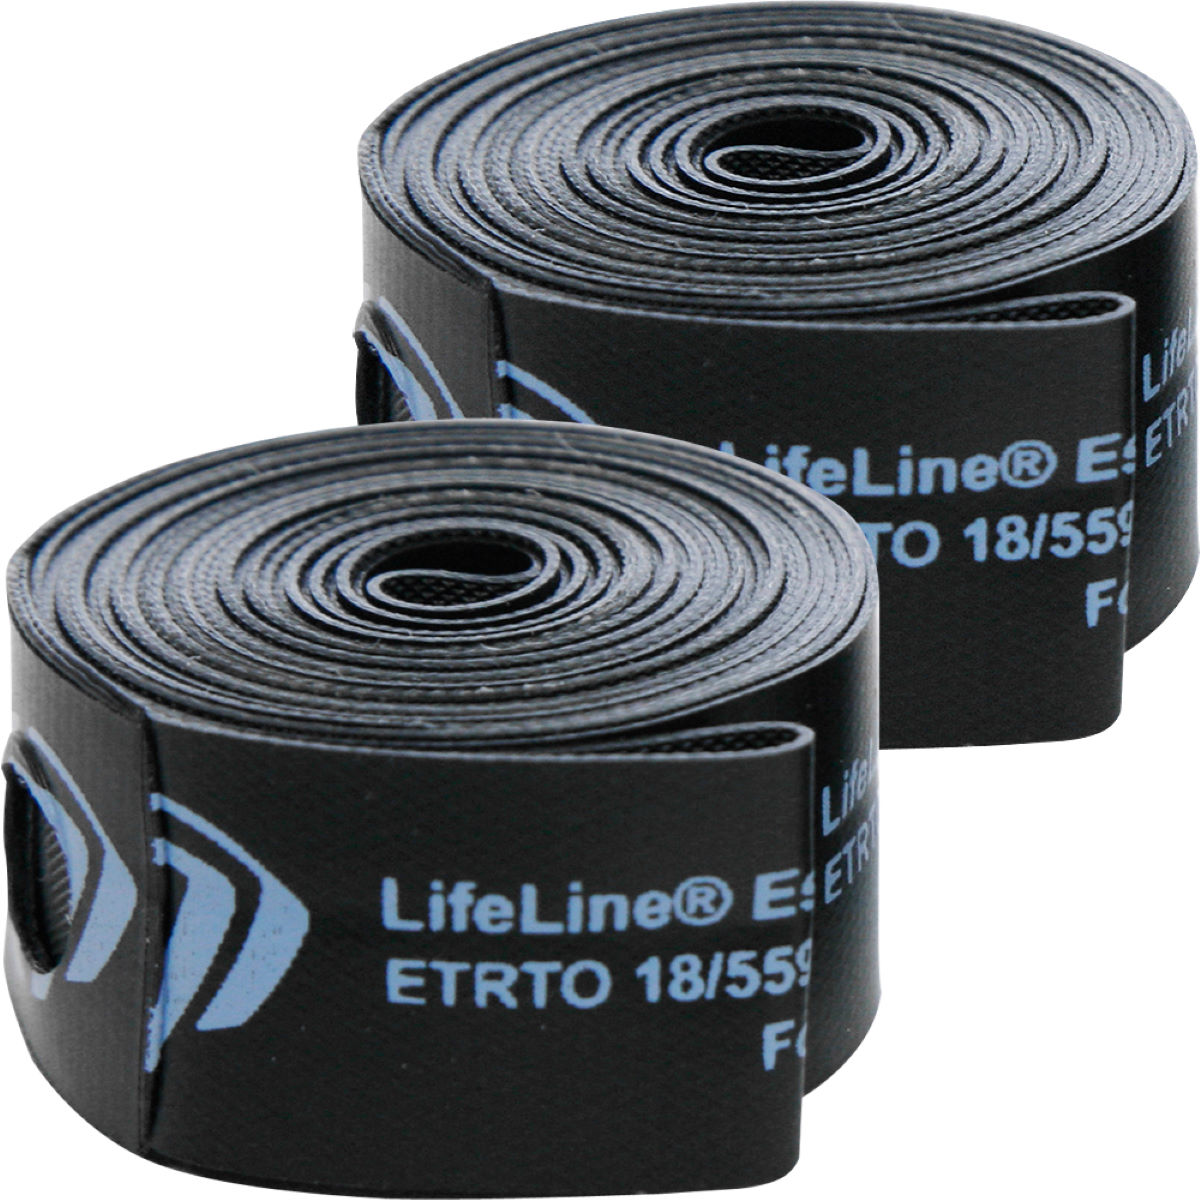 Banda de llanta LifeLine - Essential (paquete de 2 rollos) - Fondos de llanta